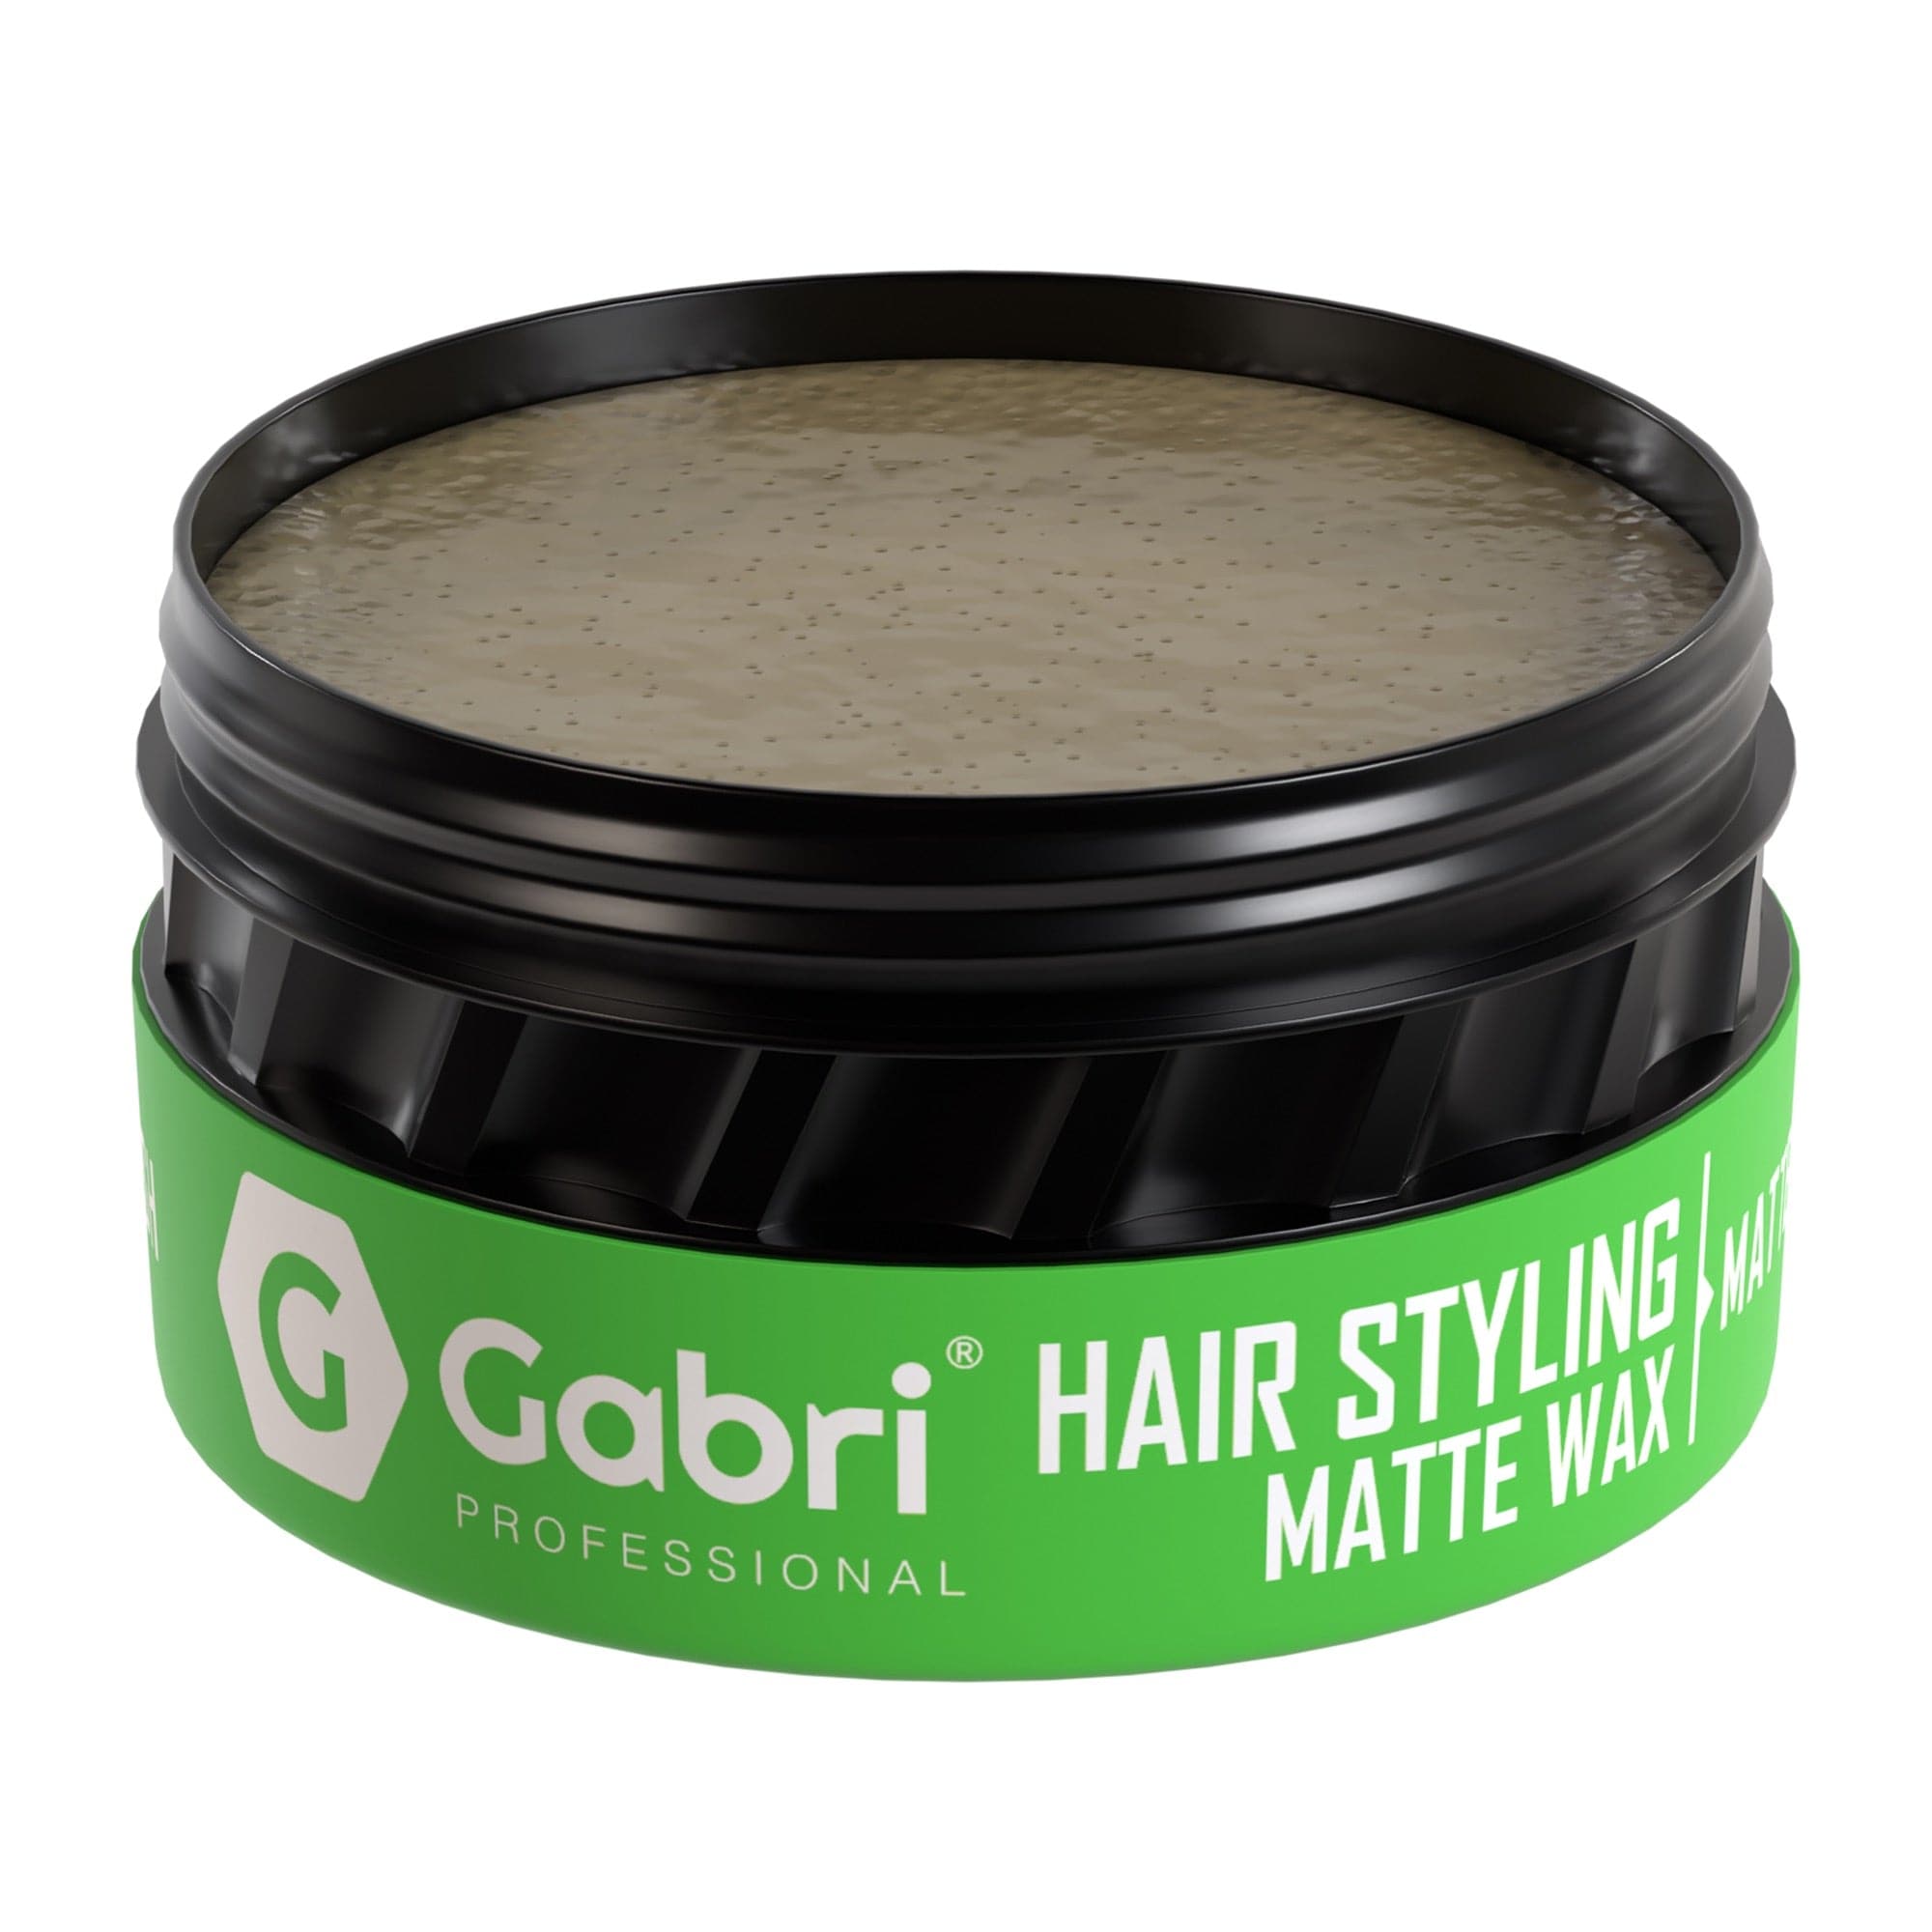 Gabri Professional - Hair Styling Matte Wax Matte Finish 150ml